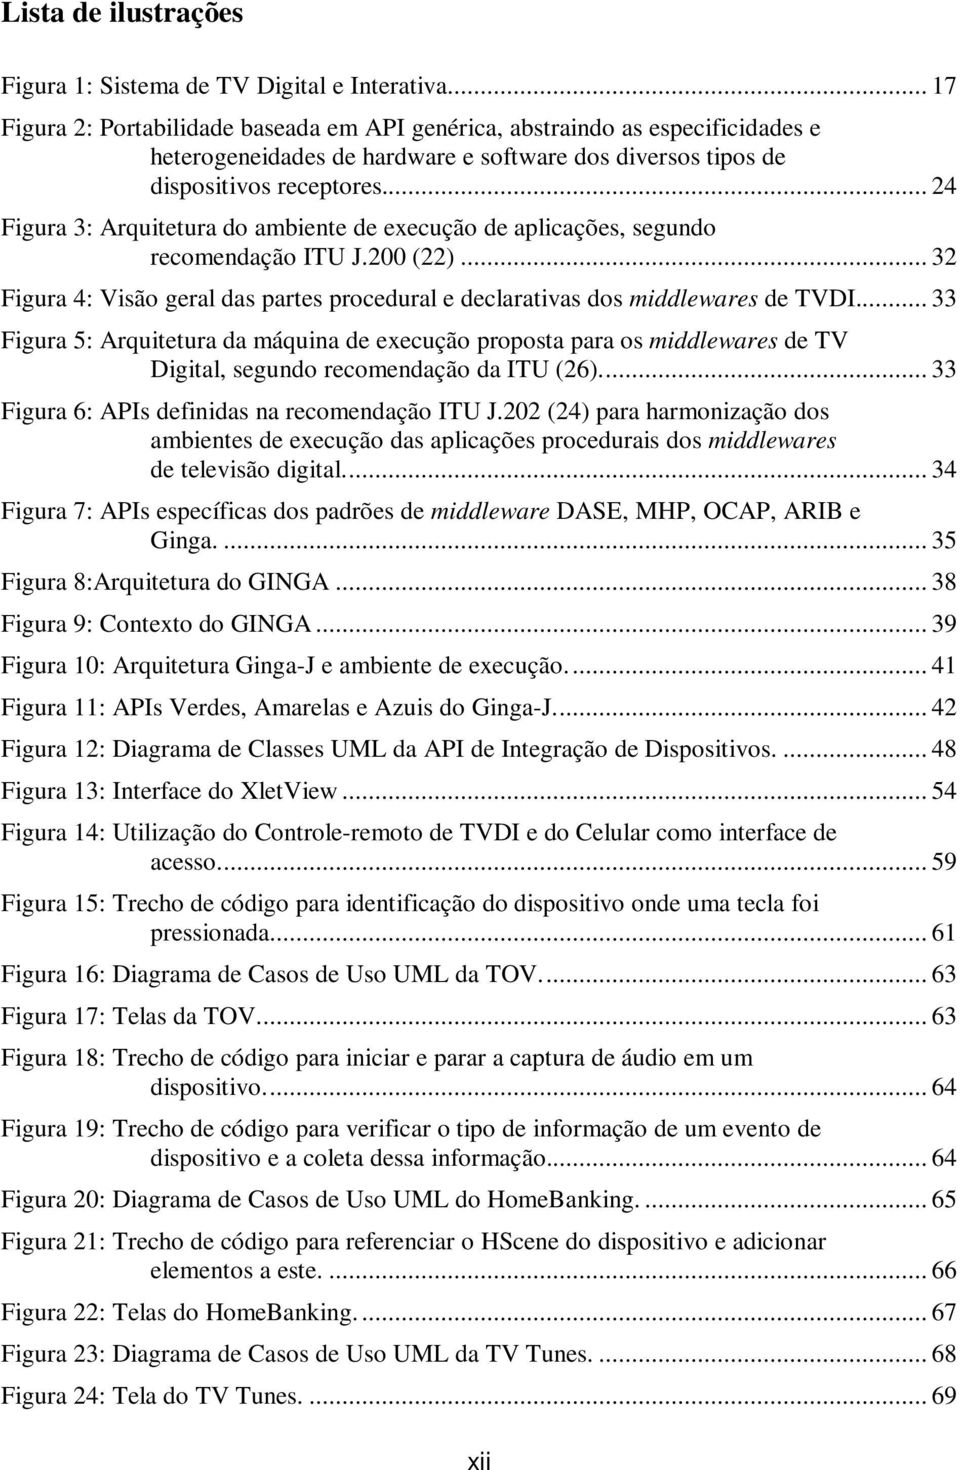 .. 24 Figura 3: Arquitetura do ambiente de execução de aplicações, segundo recomendação ITU J.200 (22)... 32 Figura 4: Visão geral das partes procedural e declarativas dos middlewares de TVDI.